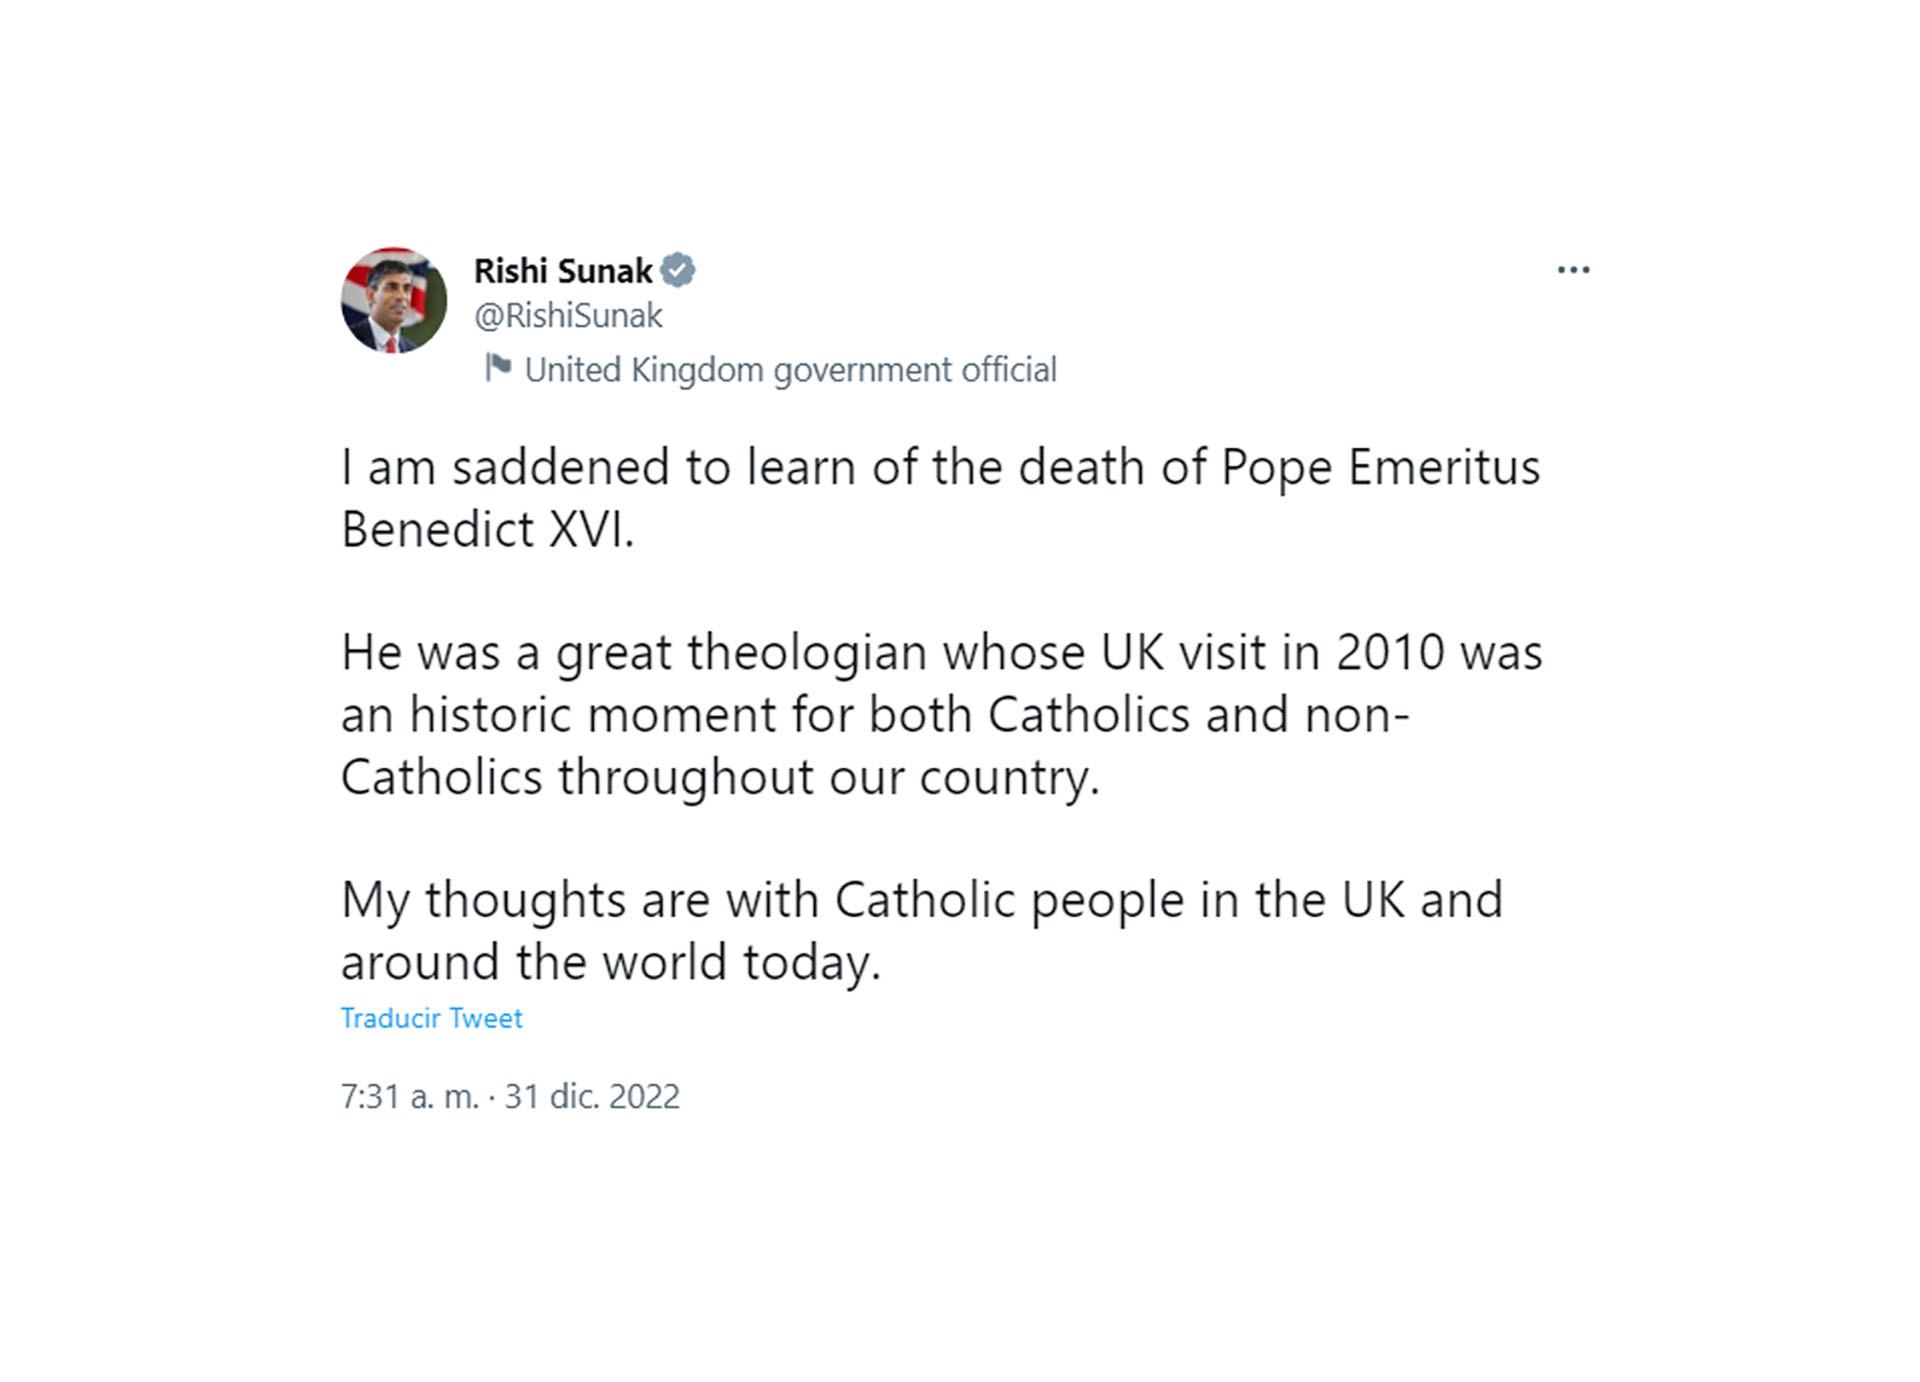 El mensaje del primer ministro británico por la muerte de Benedicto XVI